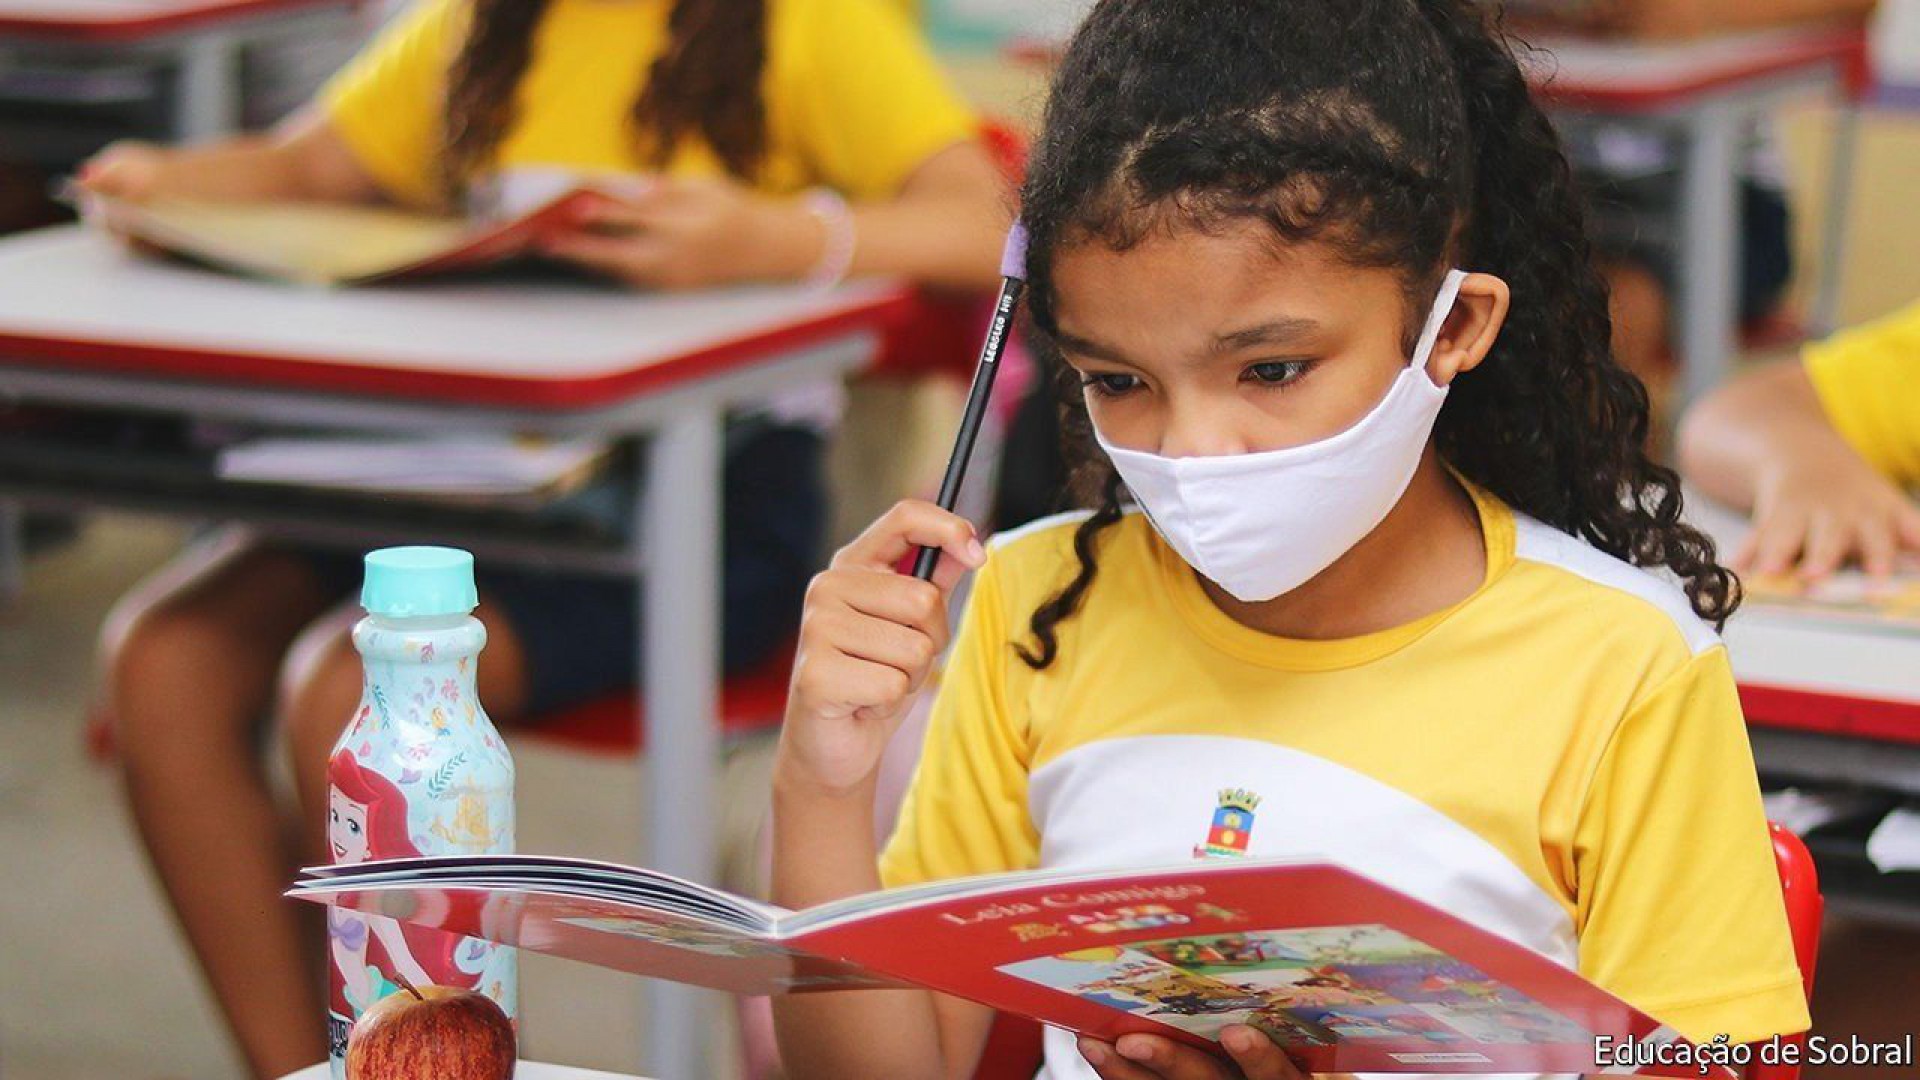 Por anos seguidos, a educação de Sobral é destaque em prêmios e publicações nacionais e internacionais (Foto: Prefeitura de Sobral/Divulgação)